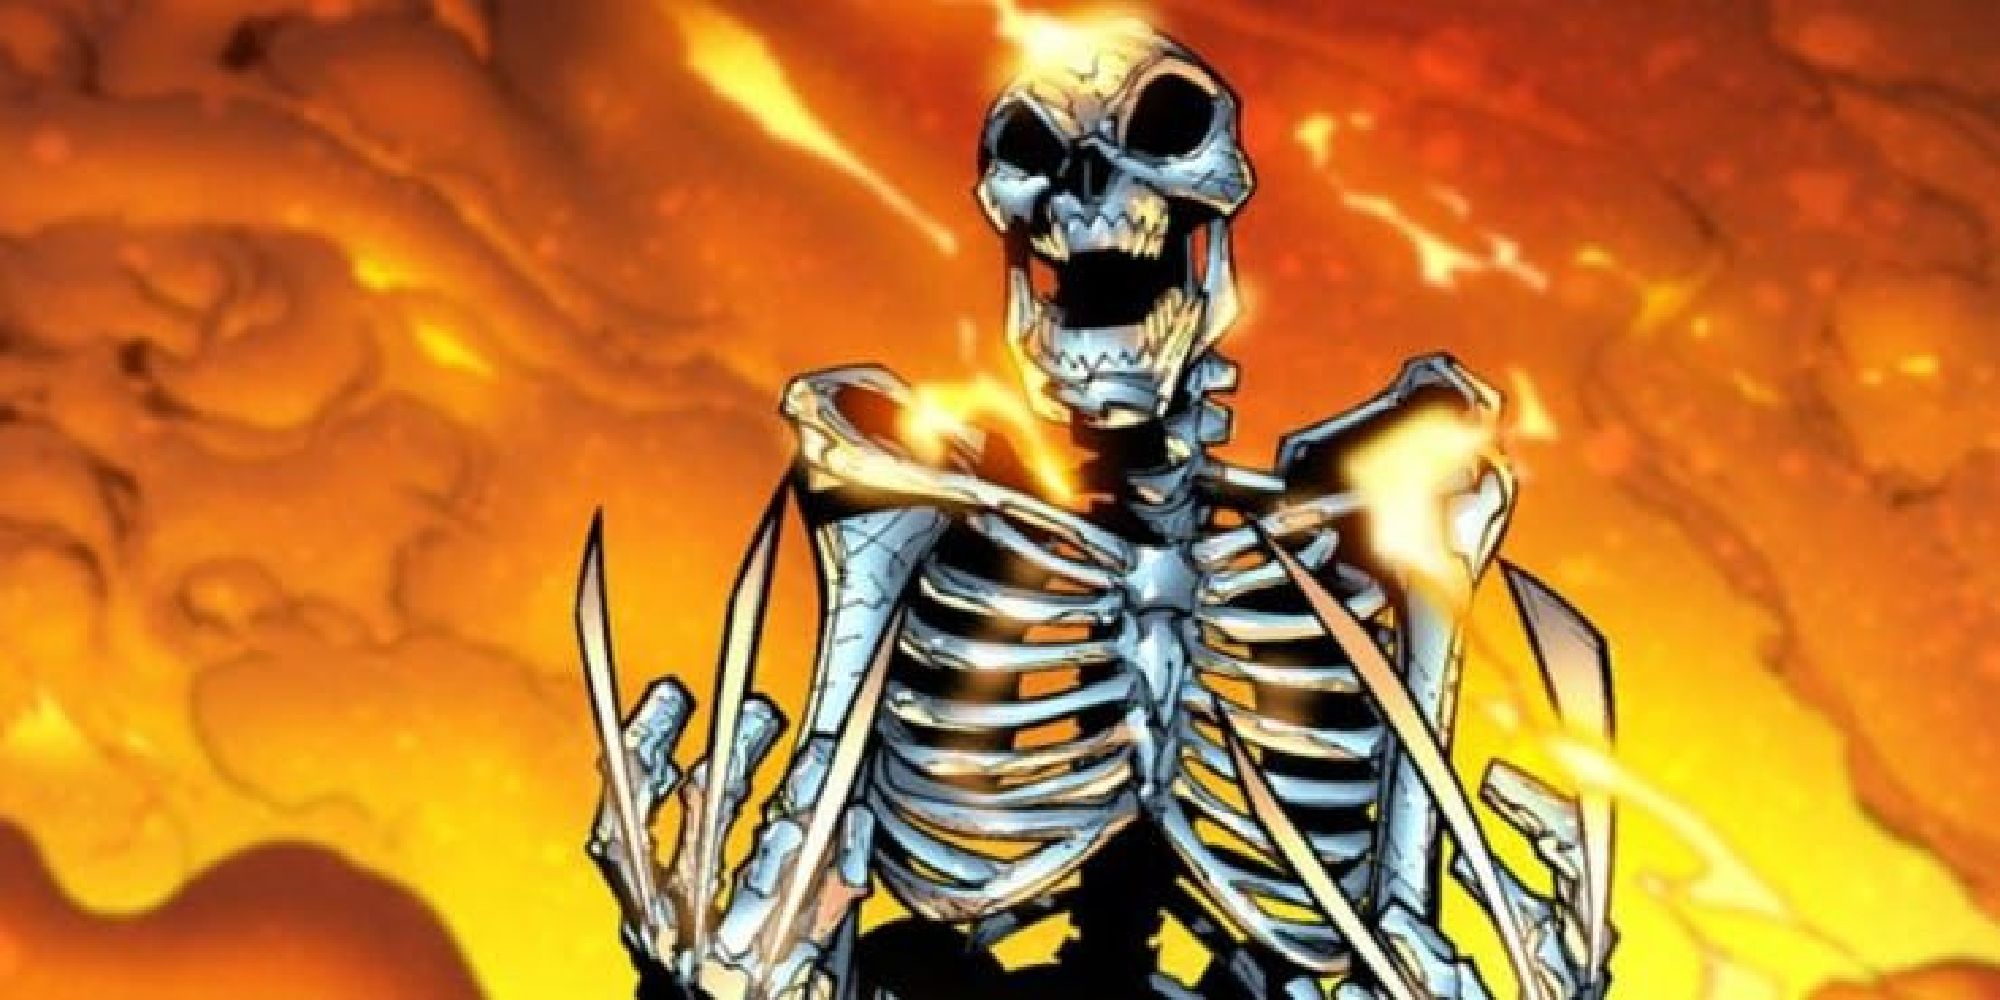 Skeleton Wolverine burning in firey smoke